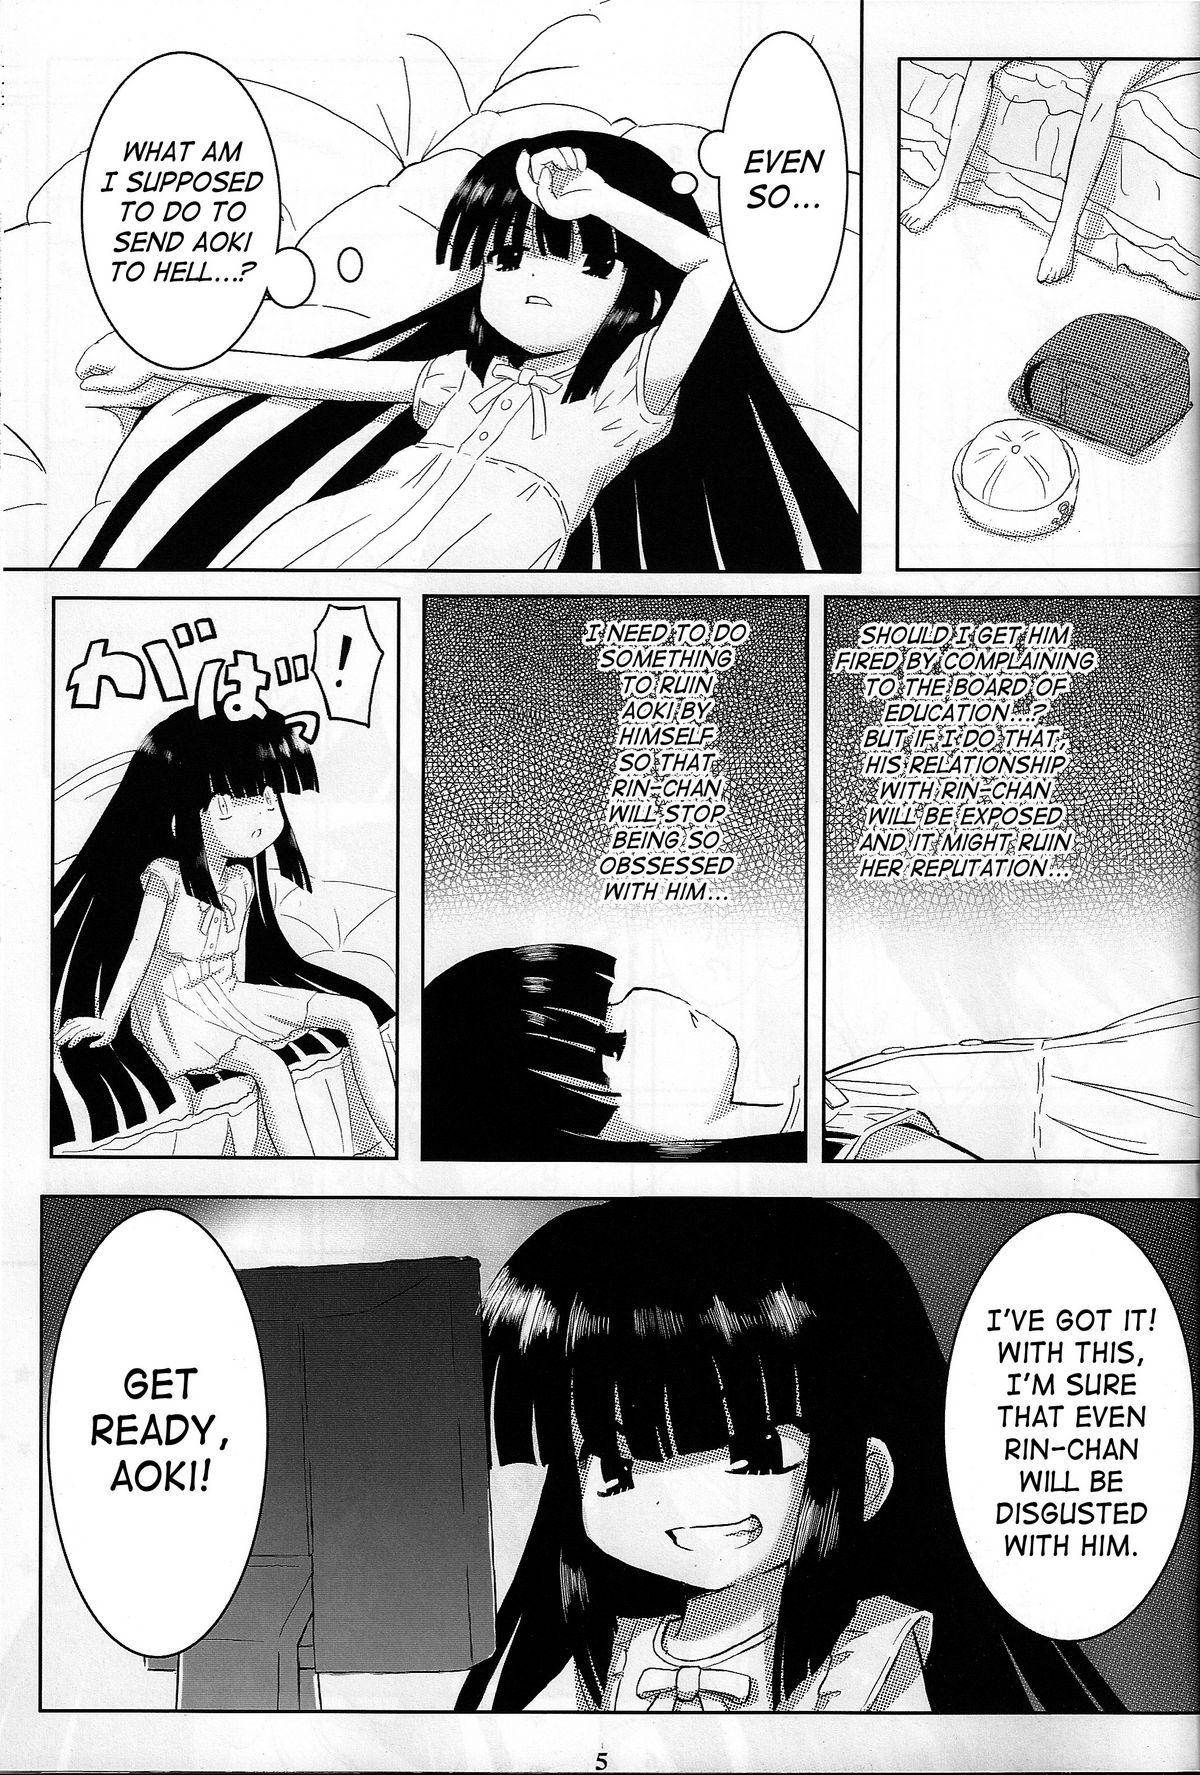 Anal Porn Kuro Masterpiece War! - Kodomo no jikan Teasing - Page 4